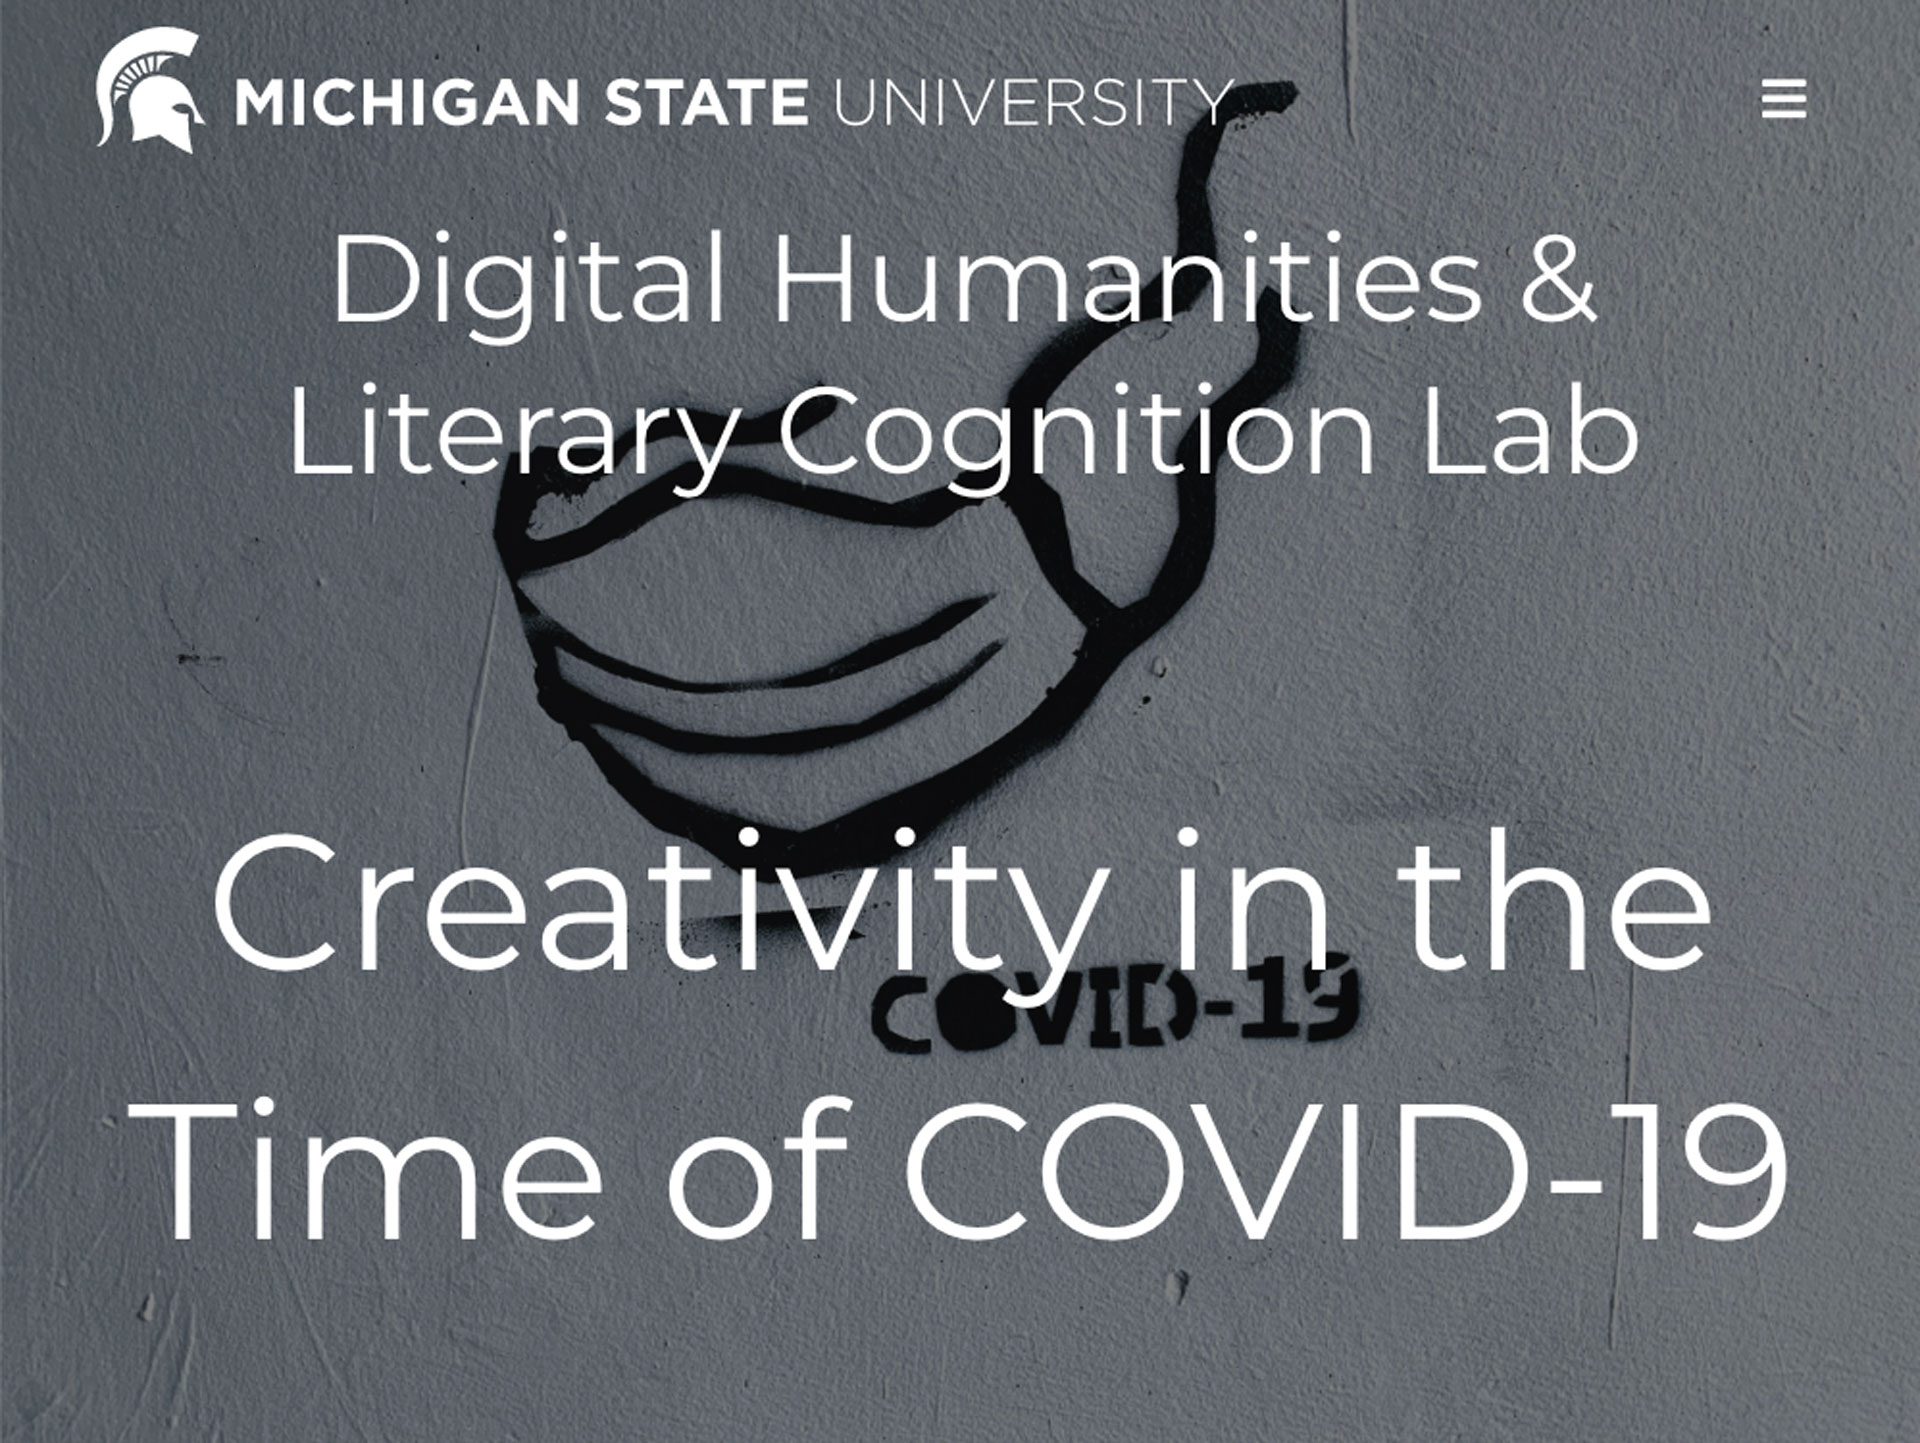 Convocatoria: Creatividad en tiempos de COVID-19 de Michigan State University